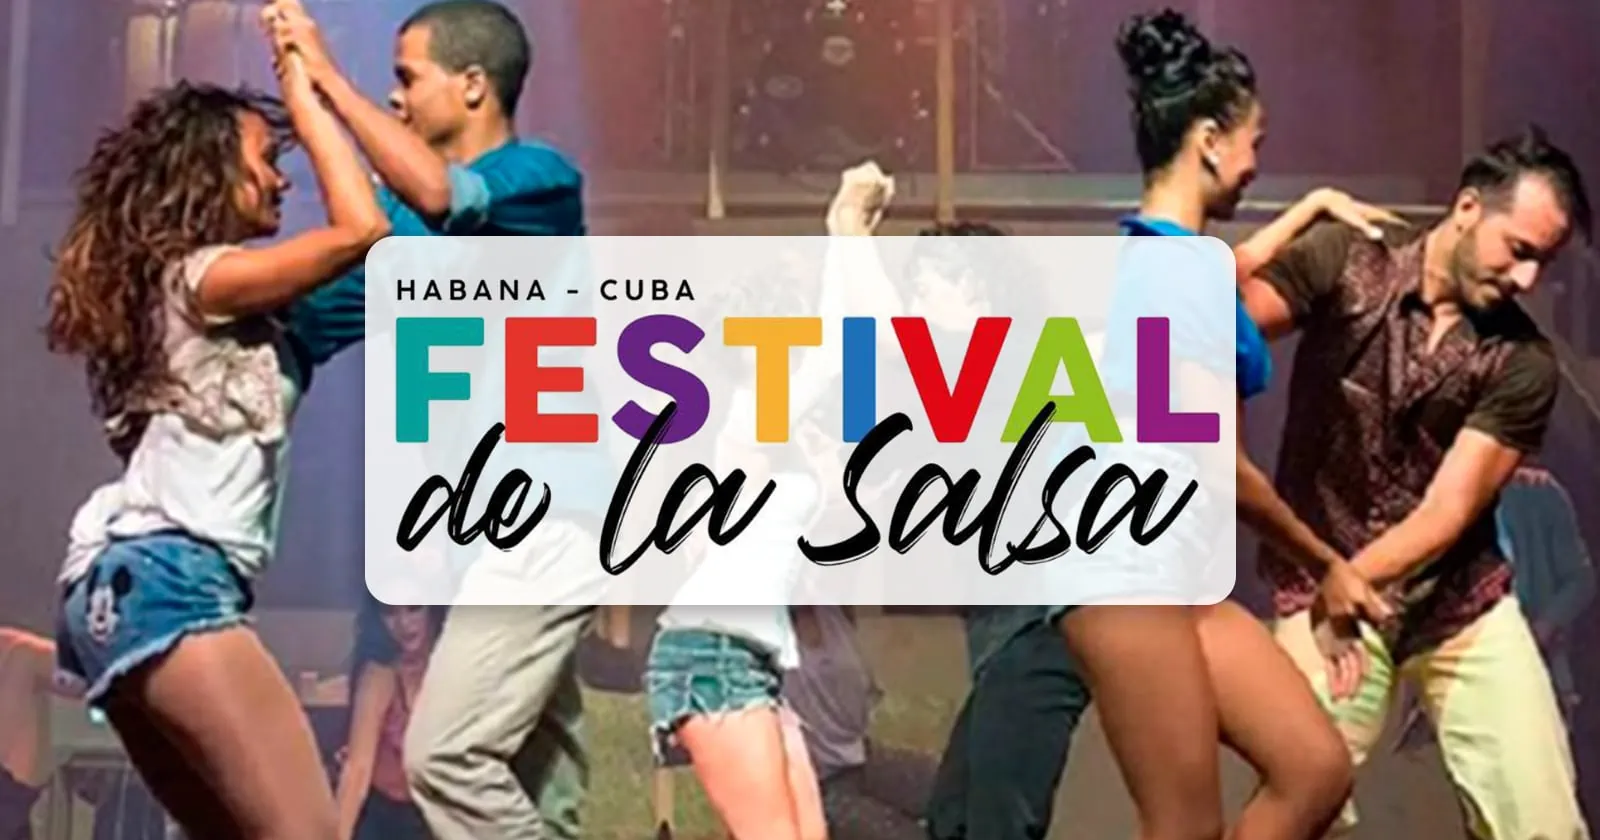 Comision Provincial de Seguridad de La Habana Emite Nota Informativa a Proposito del Festival de la Salsa